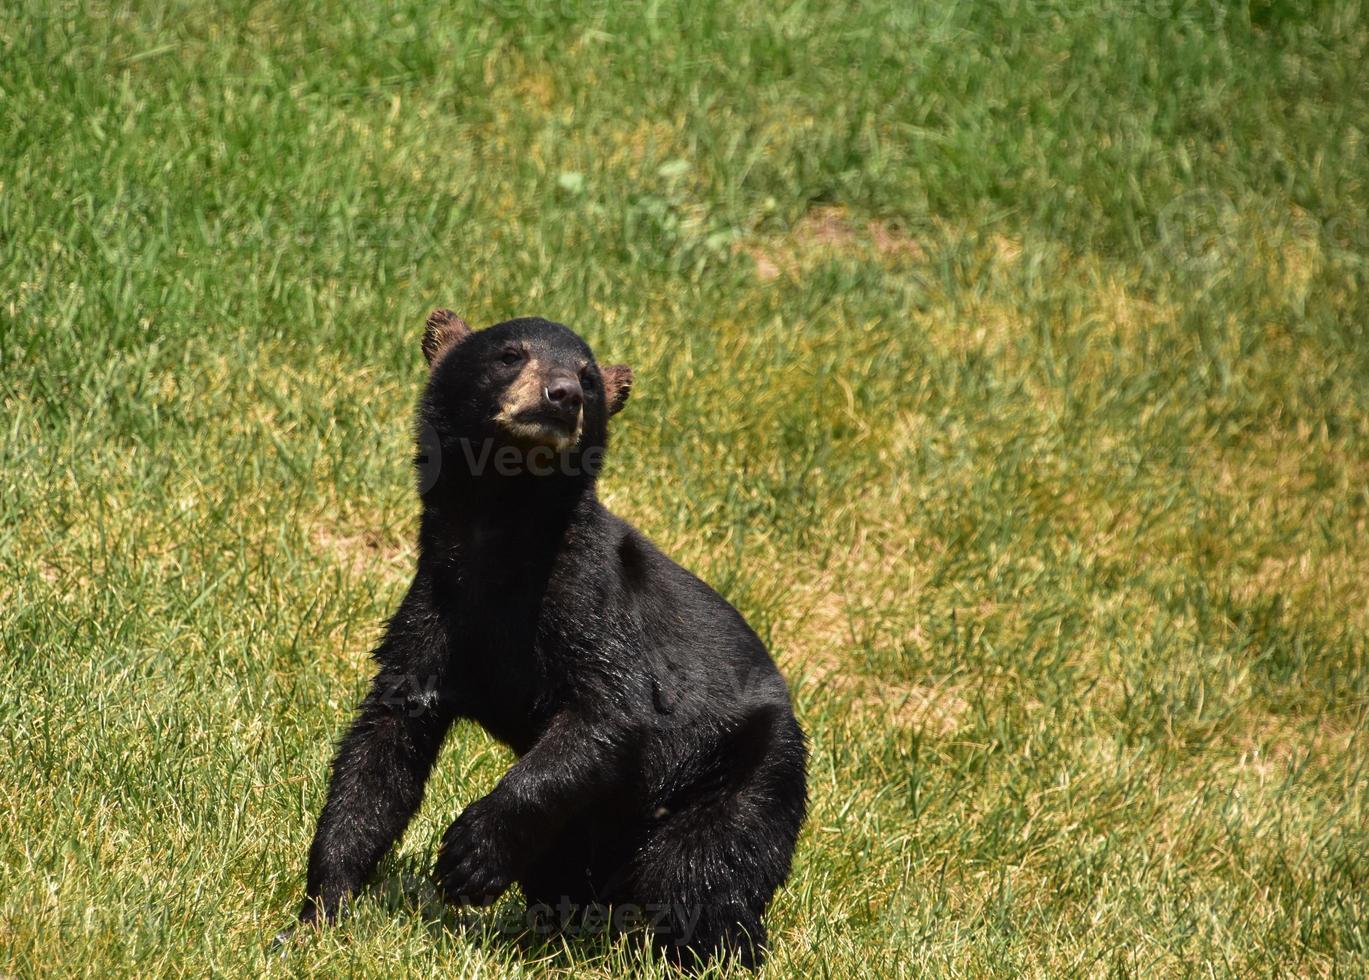 muy lindo joven oso negro preparándose para ponerse de pie foto